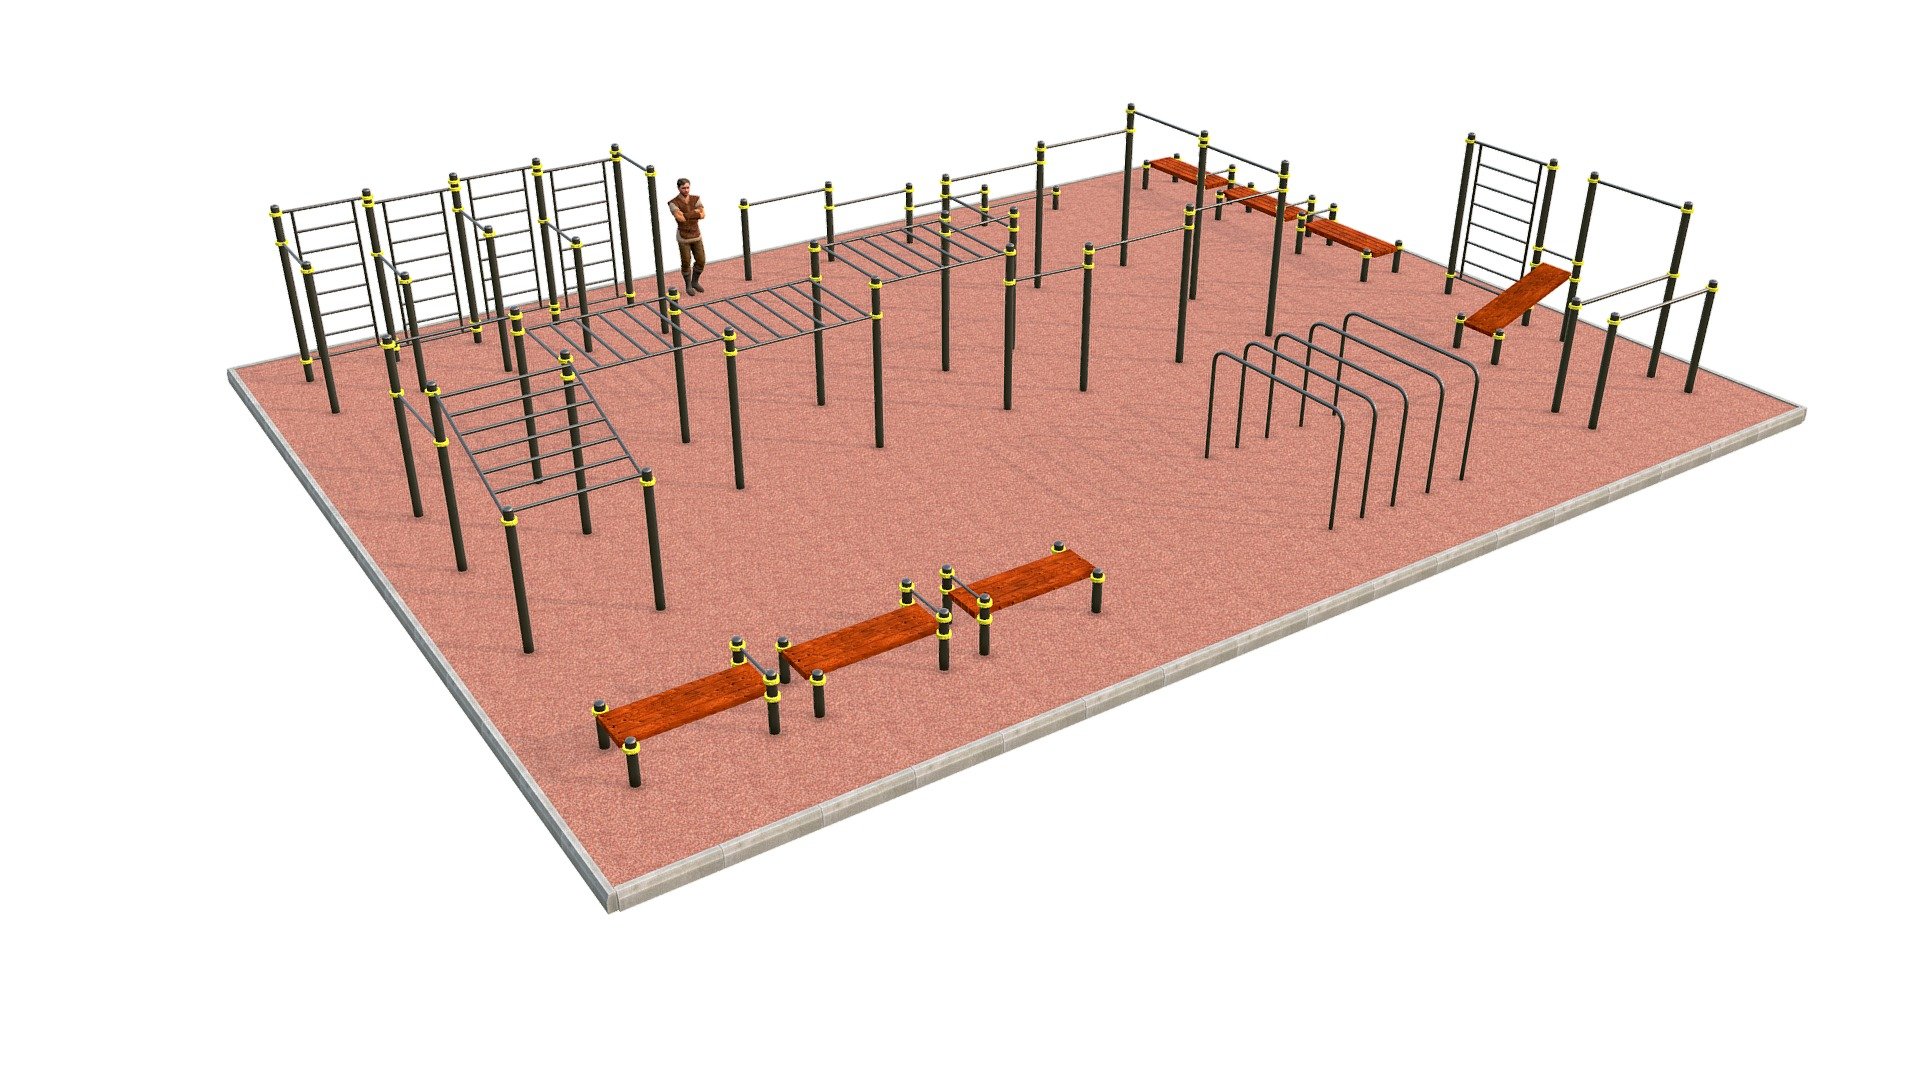 Workout area - Workout 03 - 3D model by Oleg Zhevelev (@zhev) 3d model